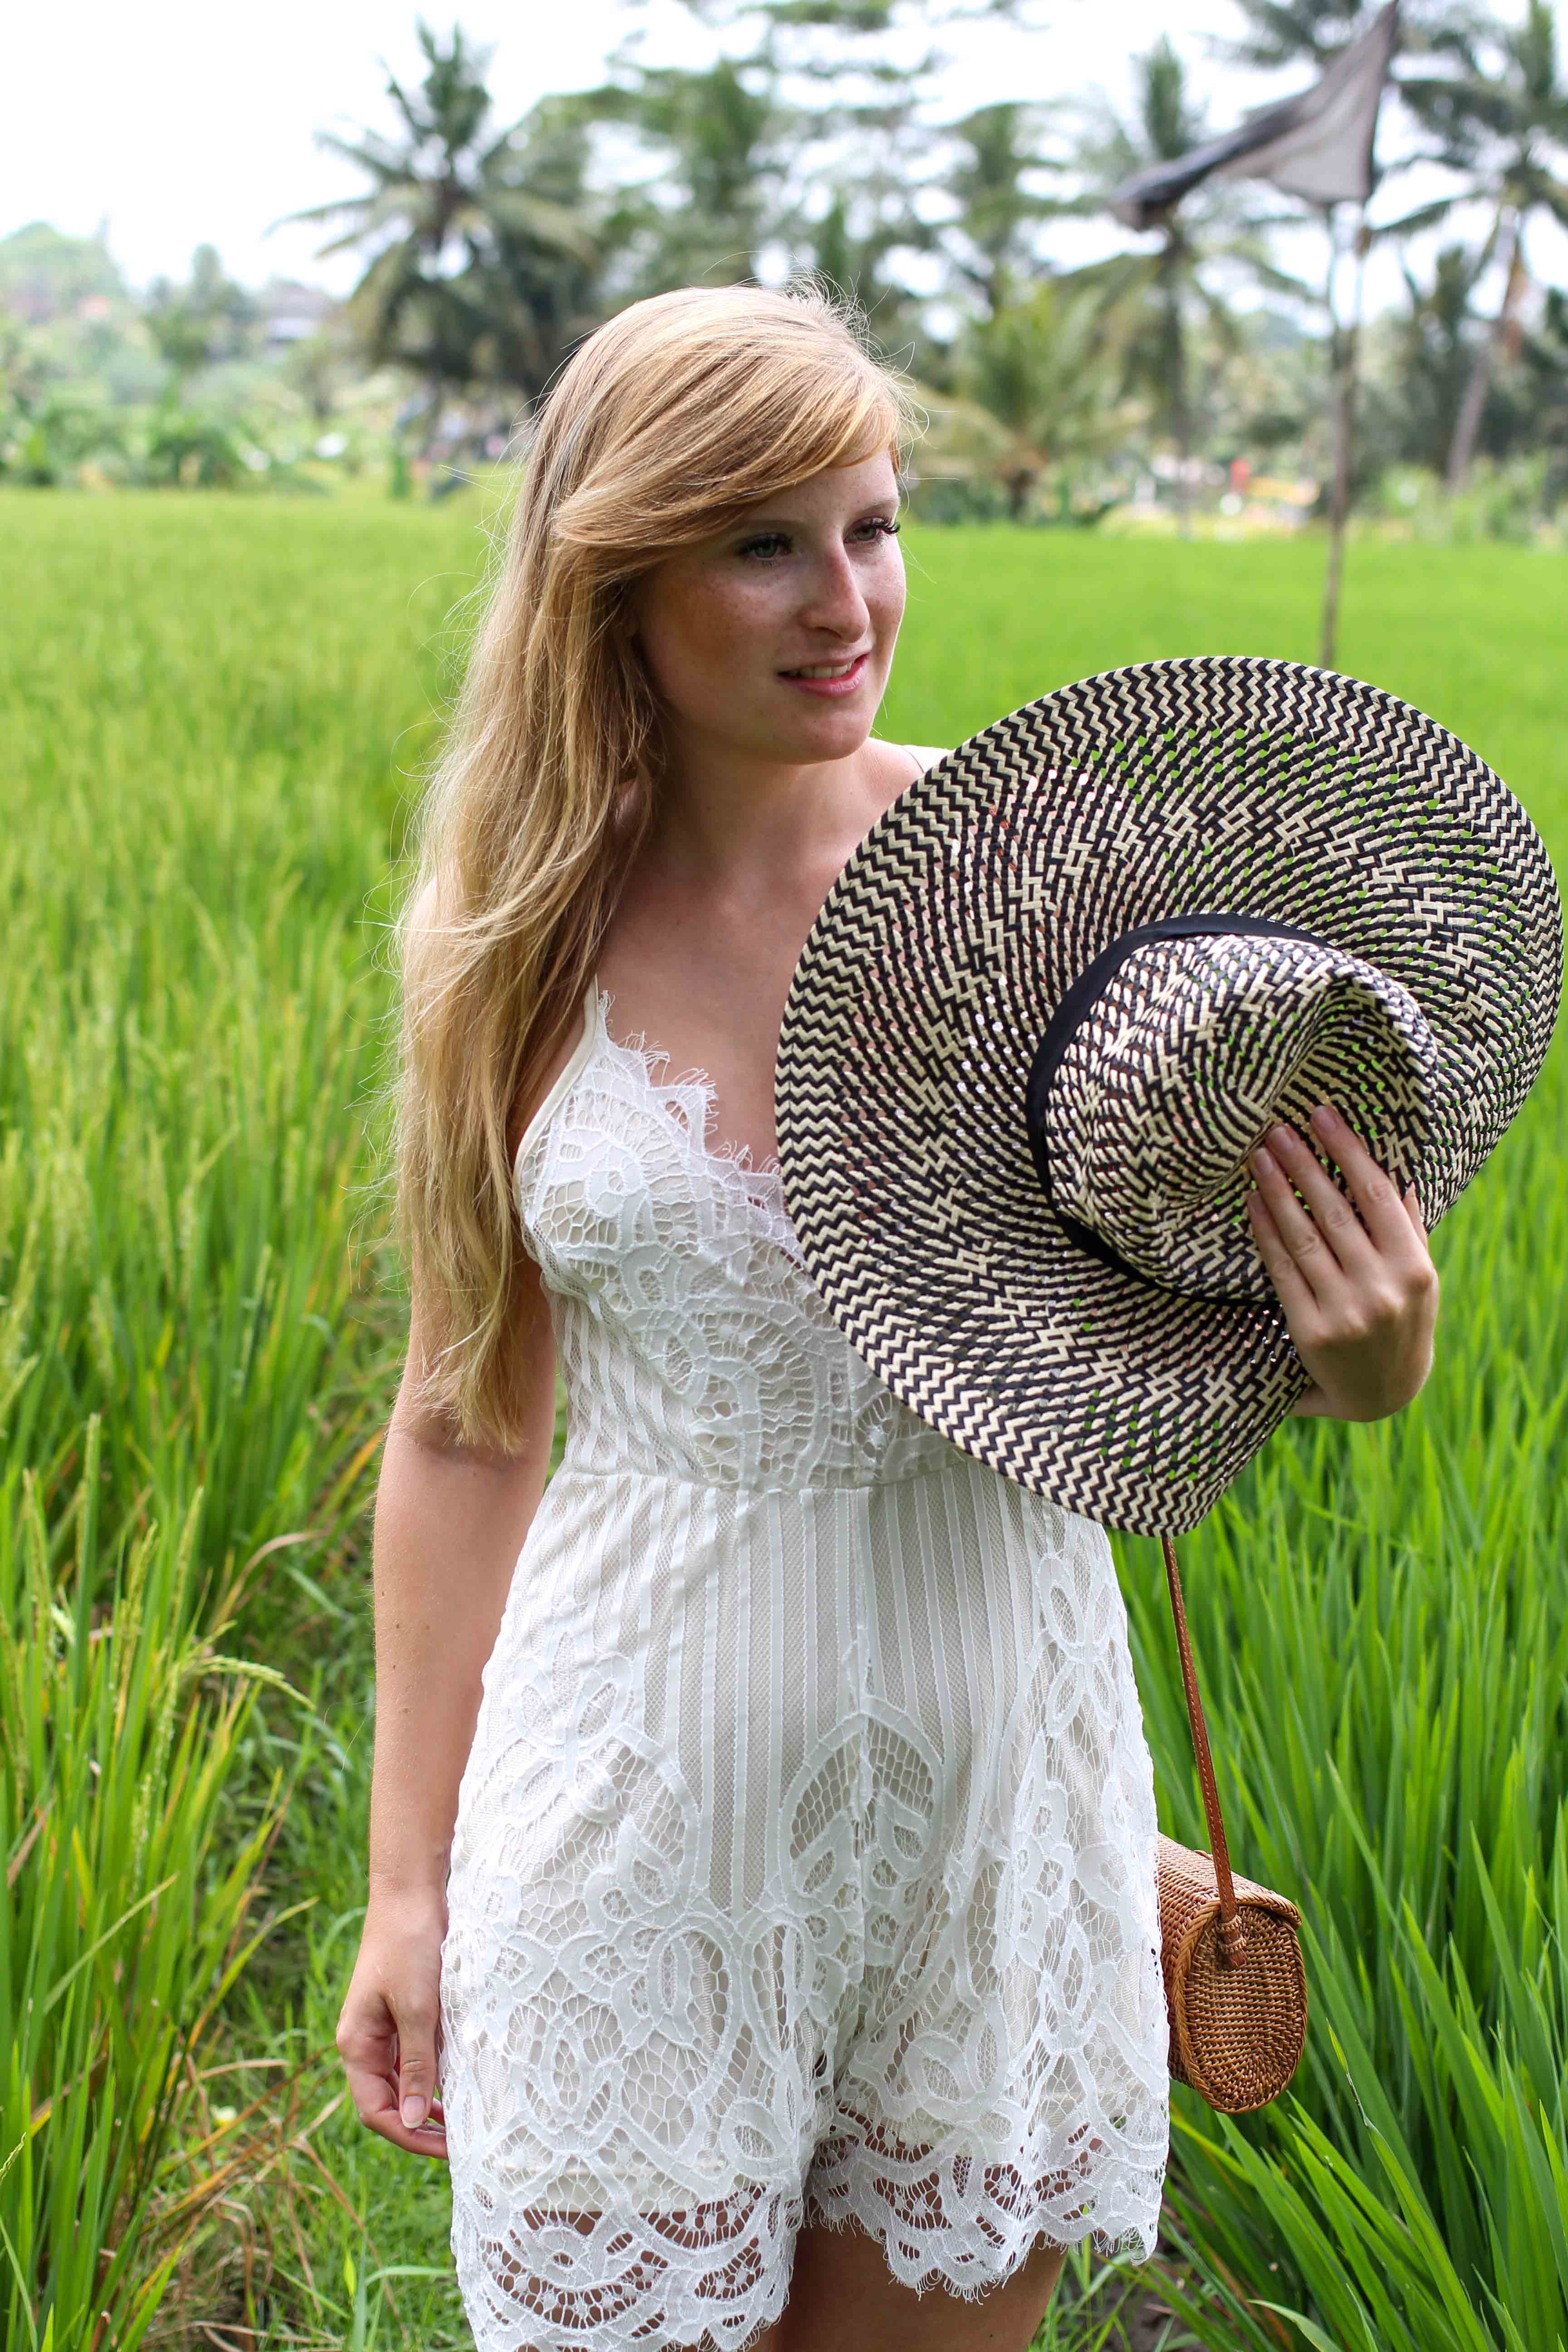 Weißer Jumpsuit kombinieren Spitze strohhut Reisfeldern Ubud Sommeroutfit Bali Modeblog 6